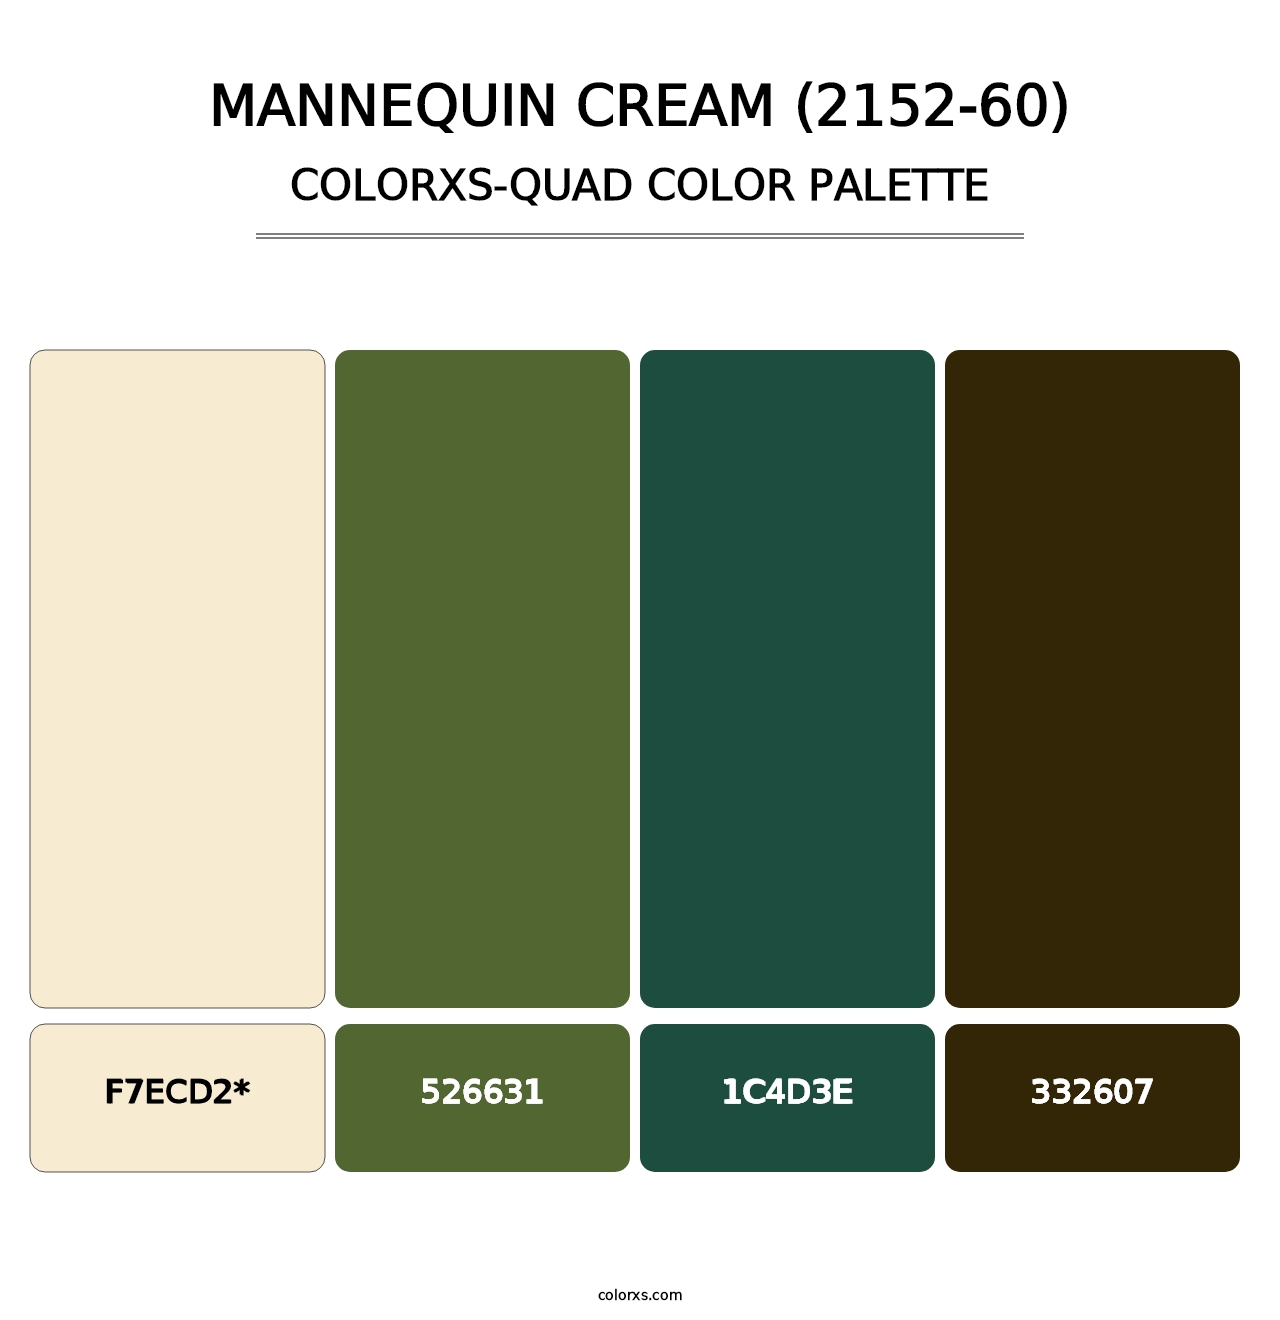 Mannequin Cream (2152-60) - Colorxs Quad Palette